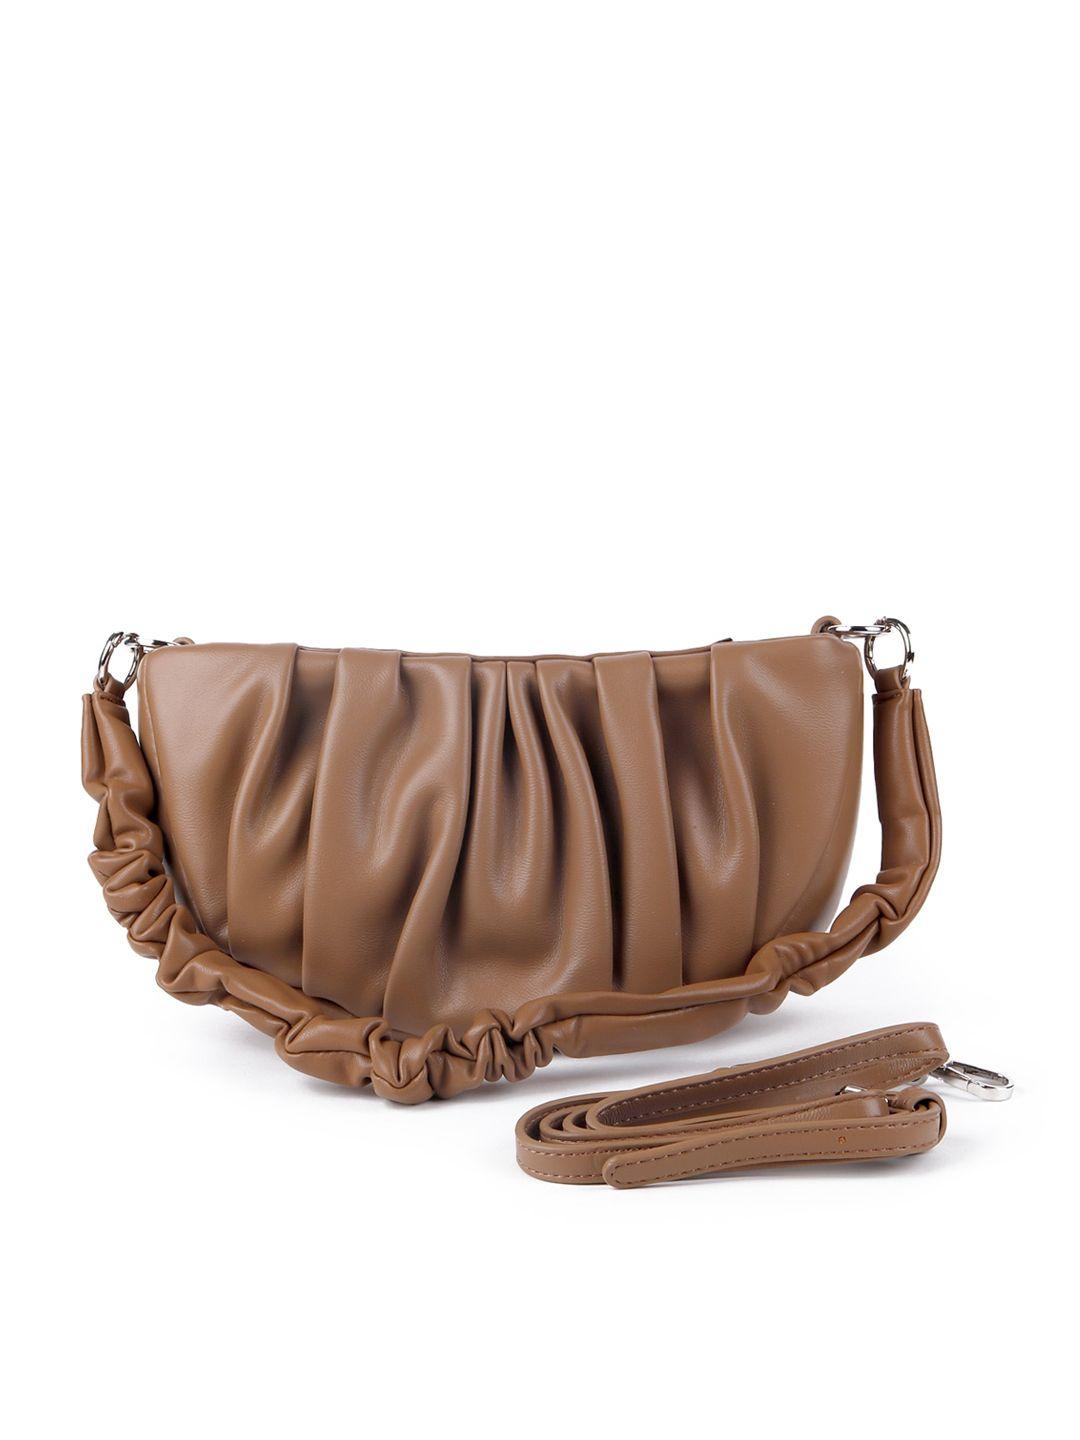 odette brown leather structured sling bag